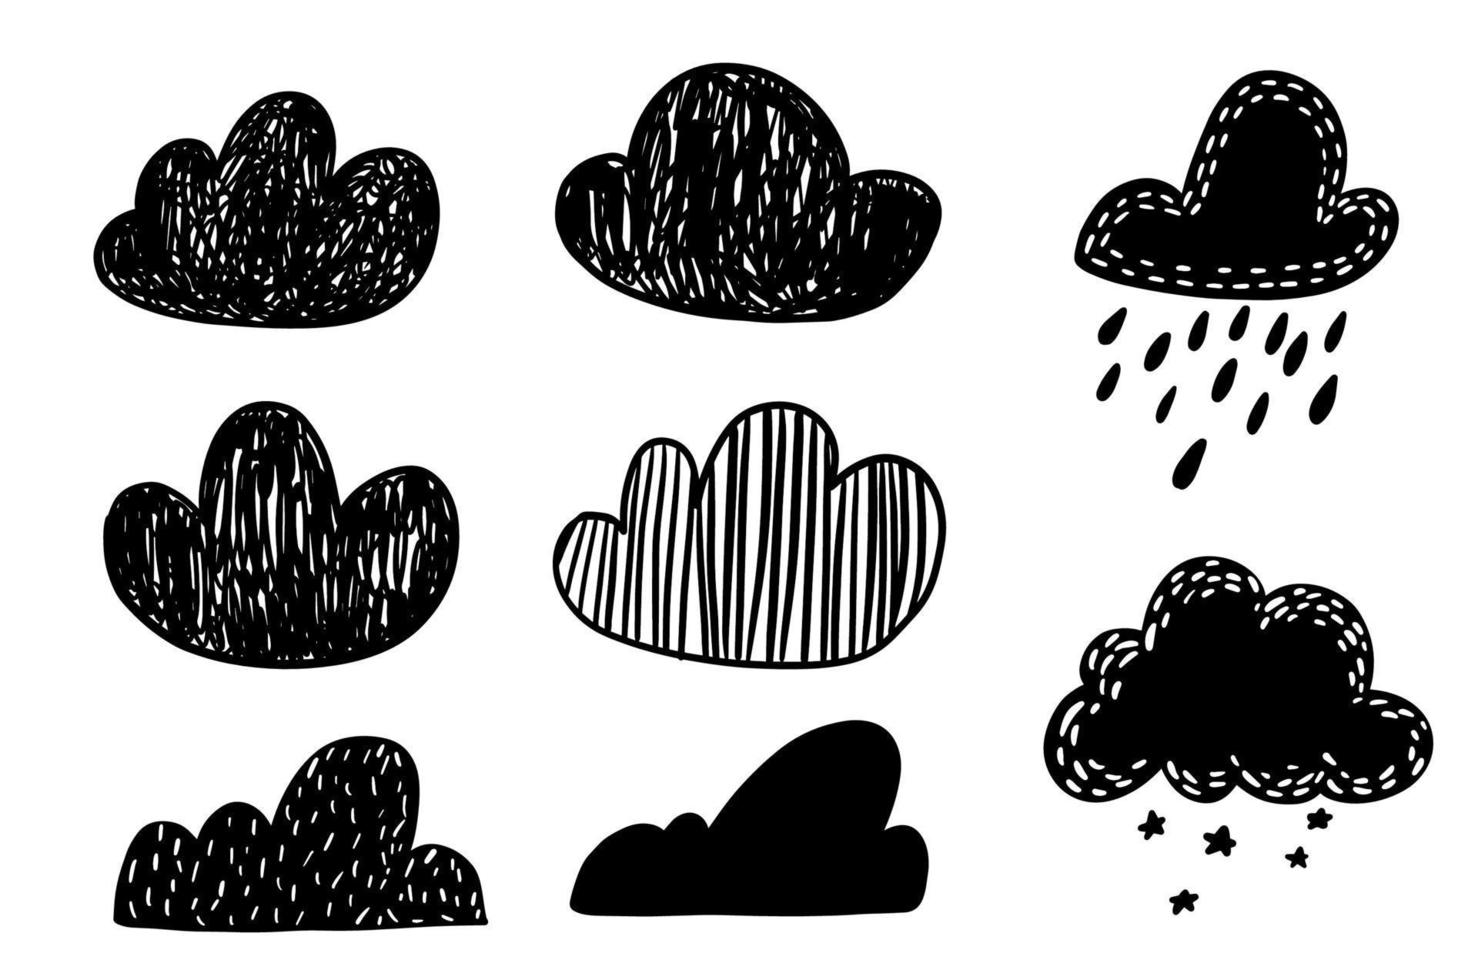 schattige cartoon doodle schets wolk krabbel bullet journal clipart vrije hand illustratie geïsoleerd op een witte achtergrond. vector